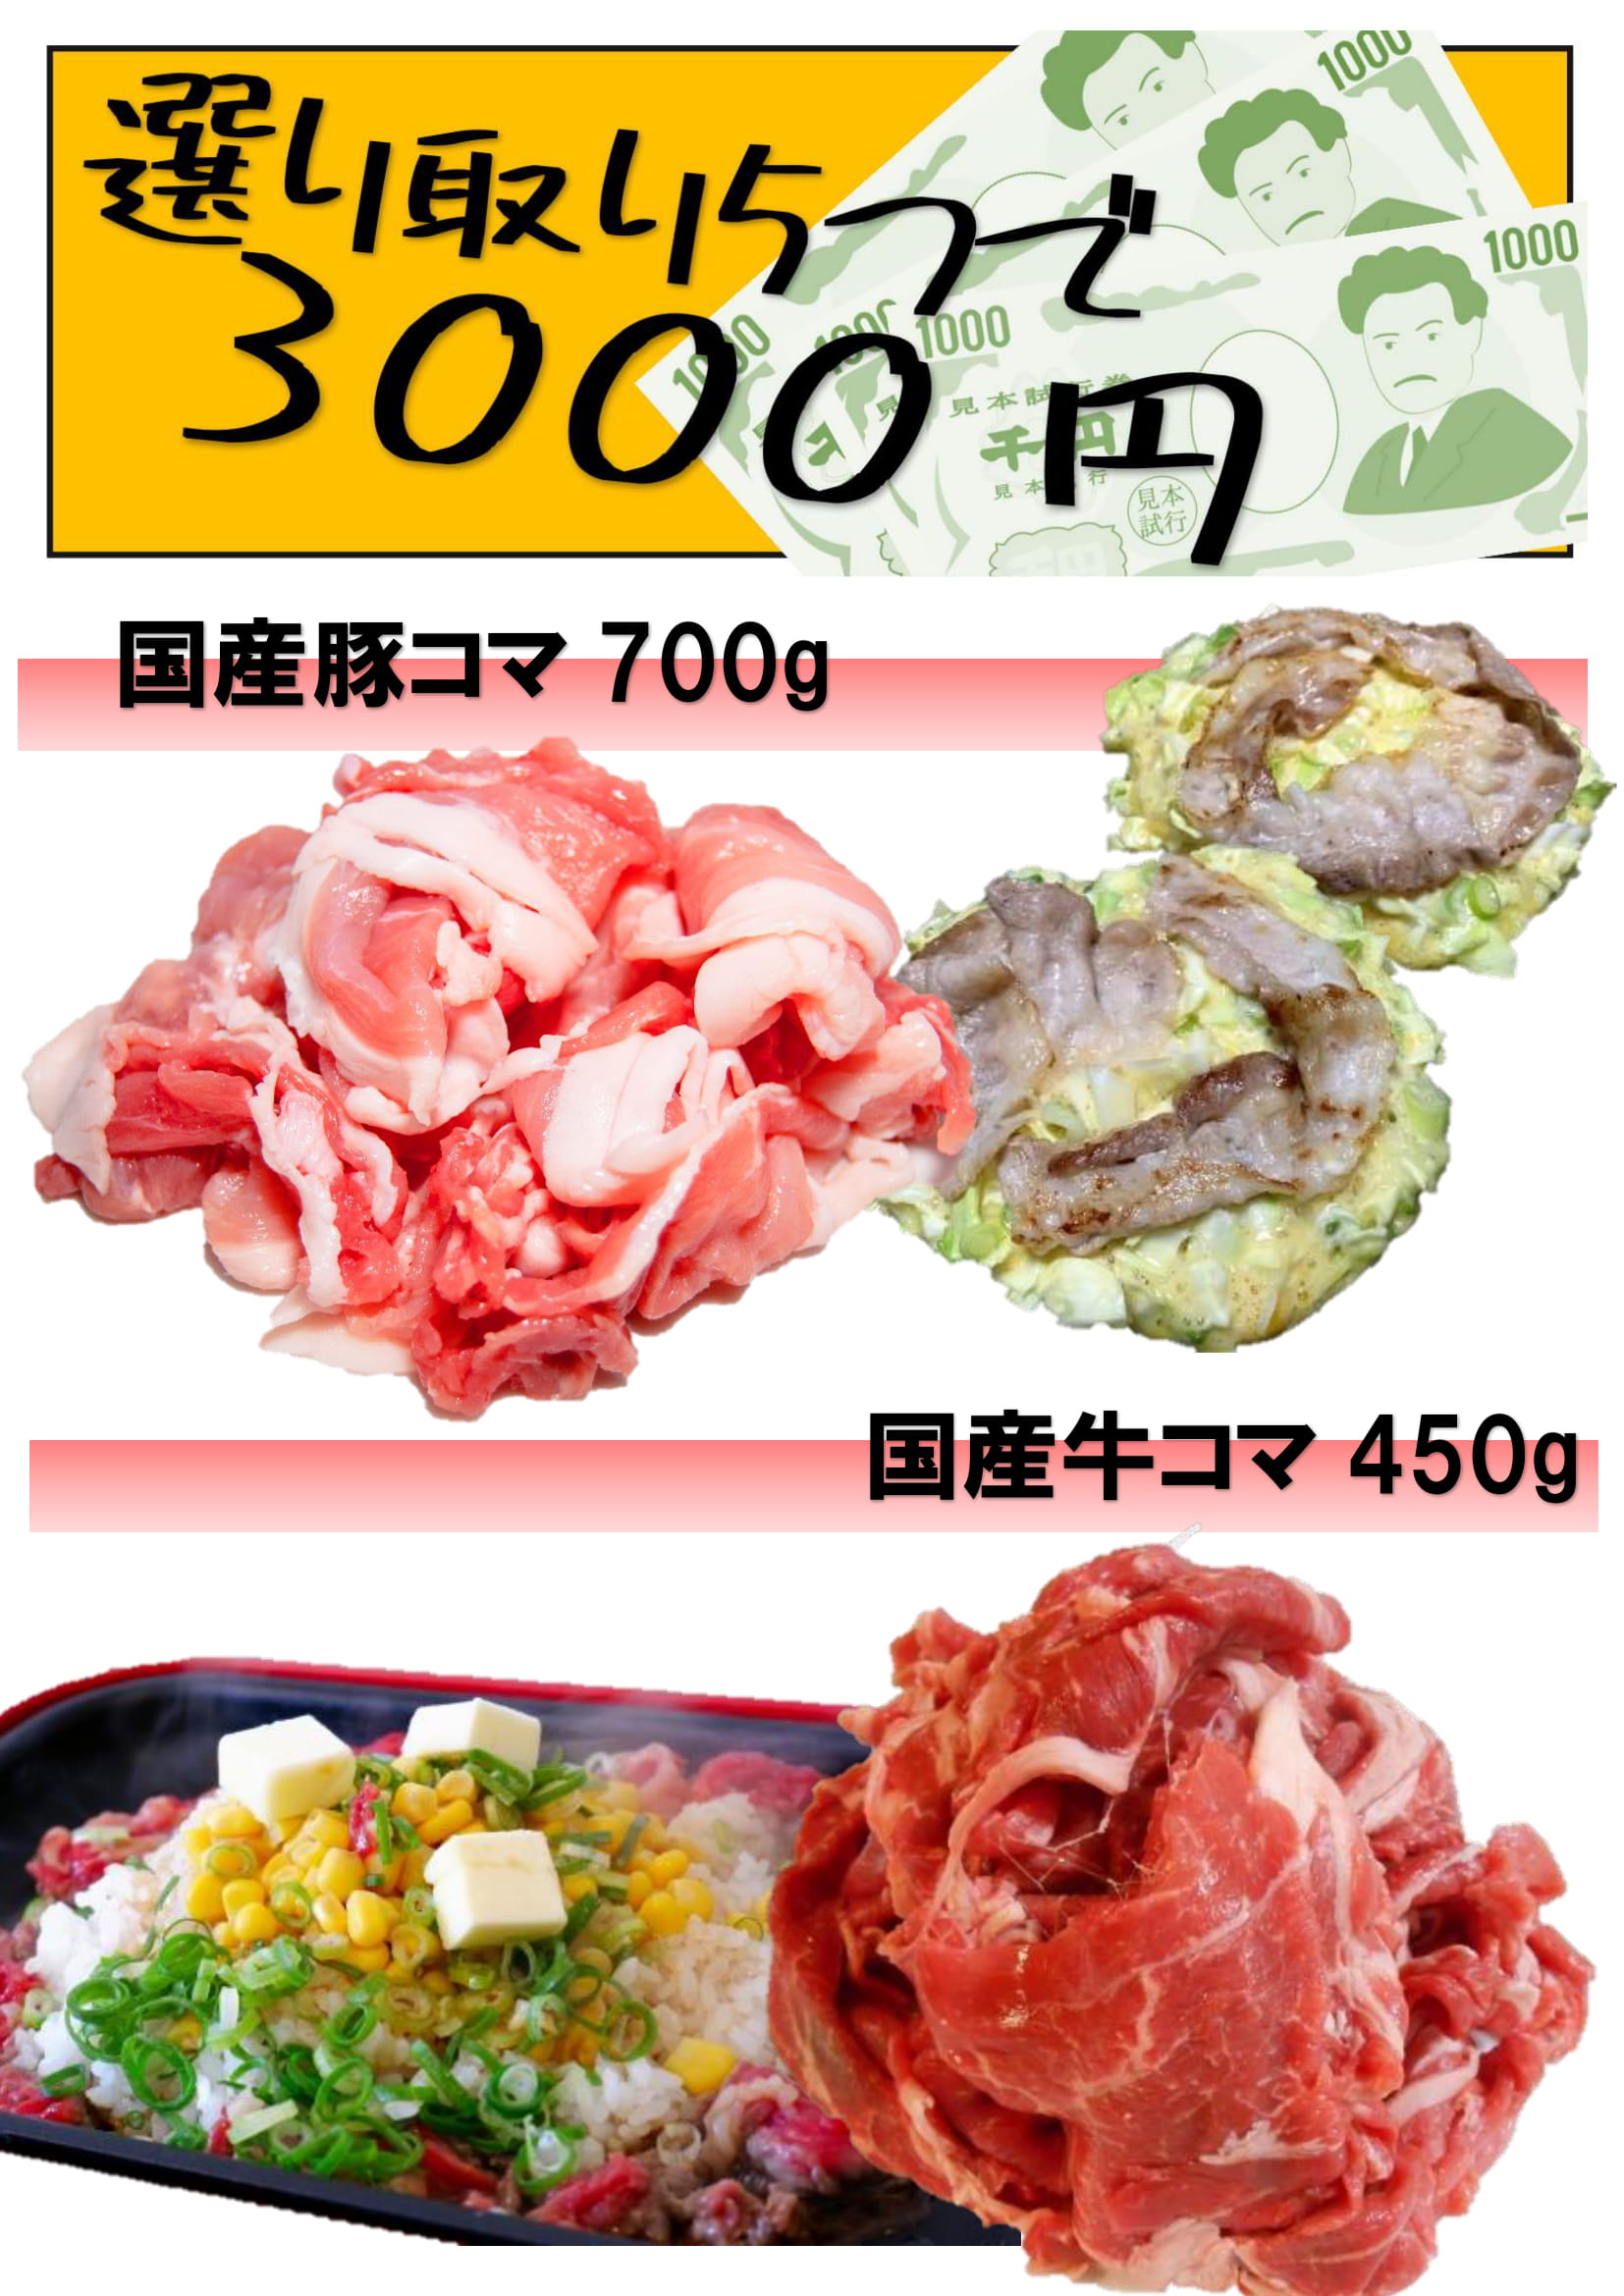 選り取り5つで3000円対象商品　2種から選んで、こま切れ肉画像